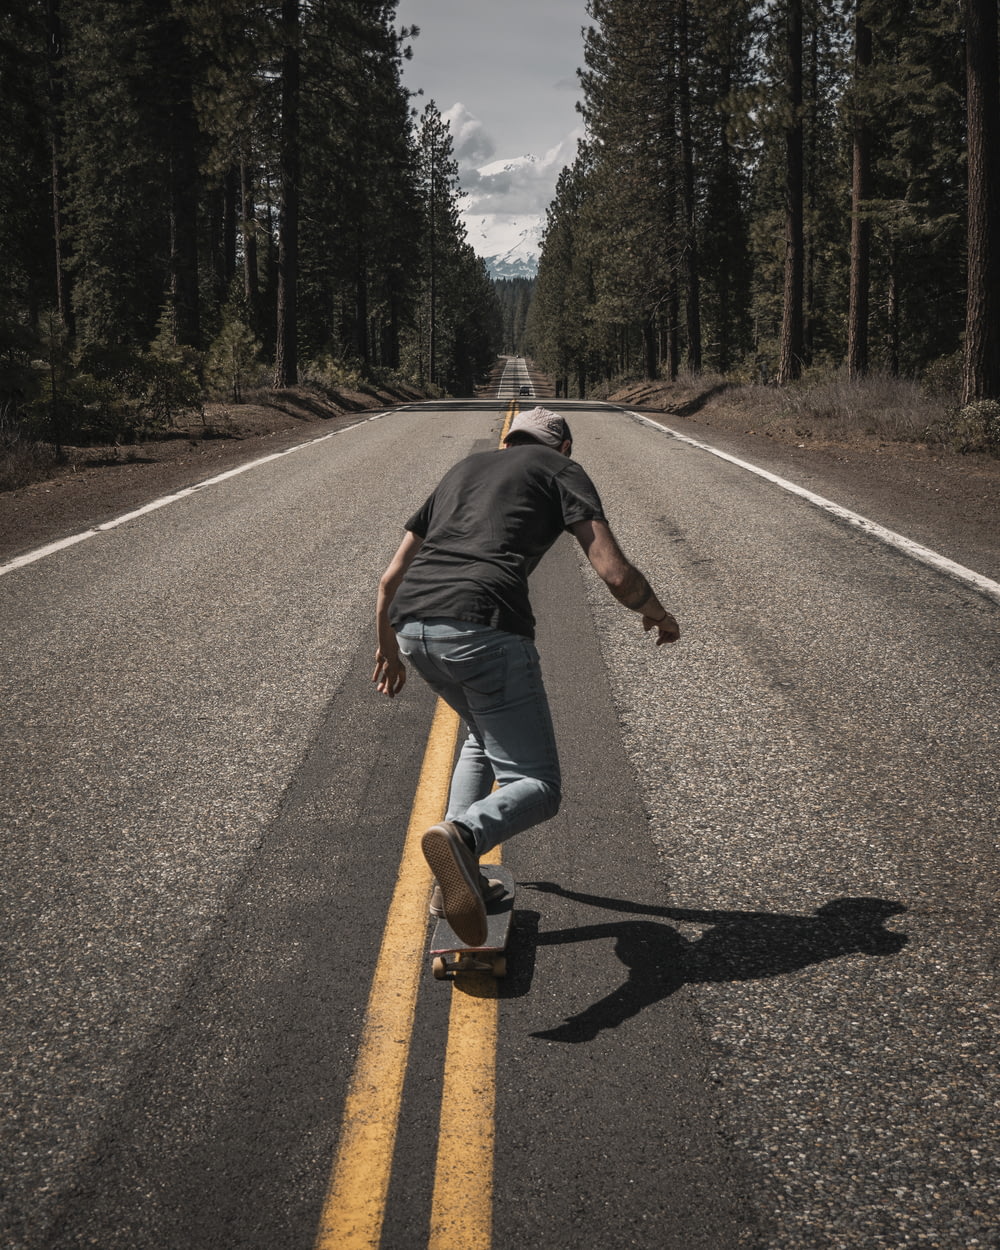 man playing skateboard on road during daytime